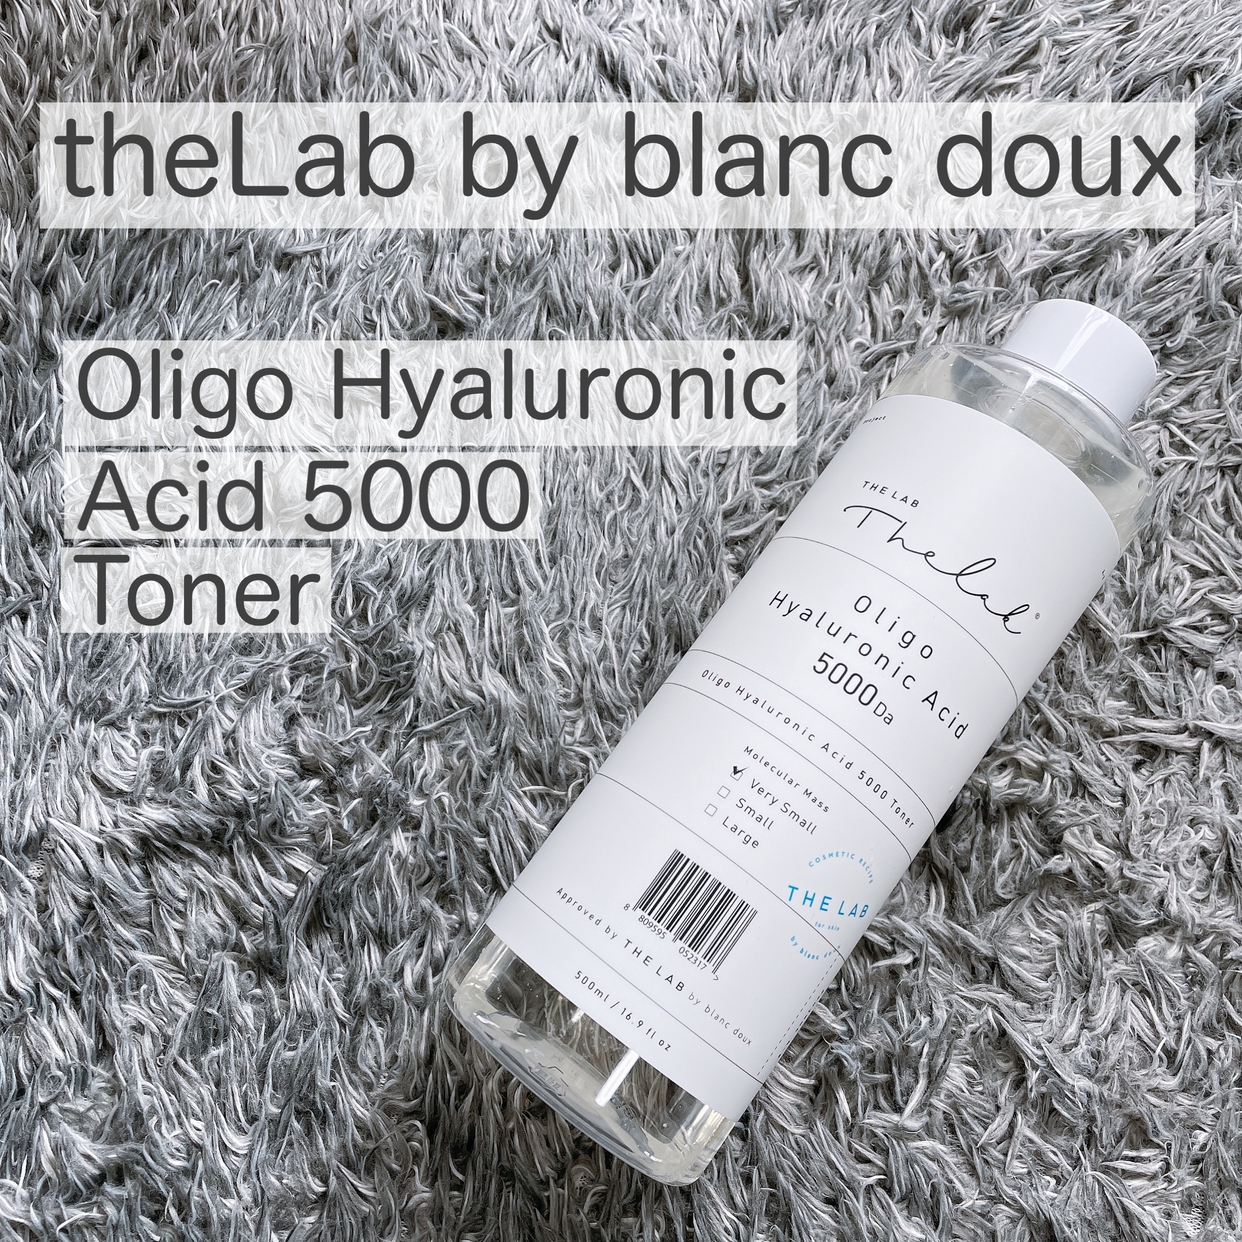 THE LAB by blanc doux(ザラボバイブランドゥ) オリゴヒアルロン酸 5000 トナーに関するけいさんの口コミ画像1